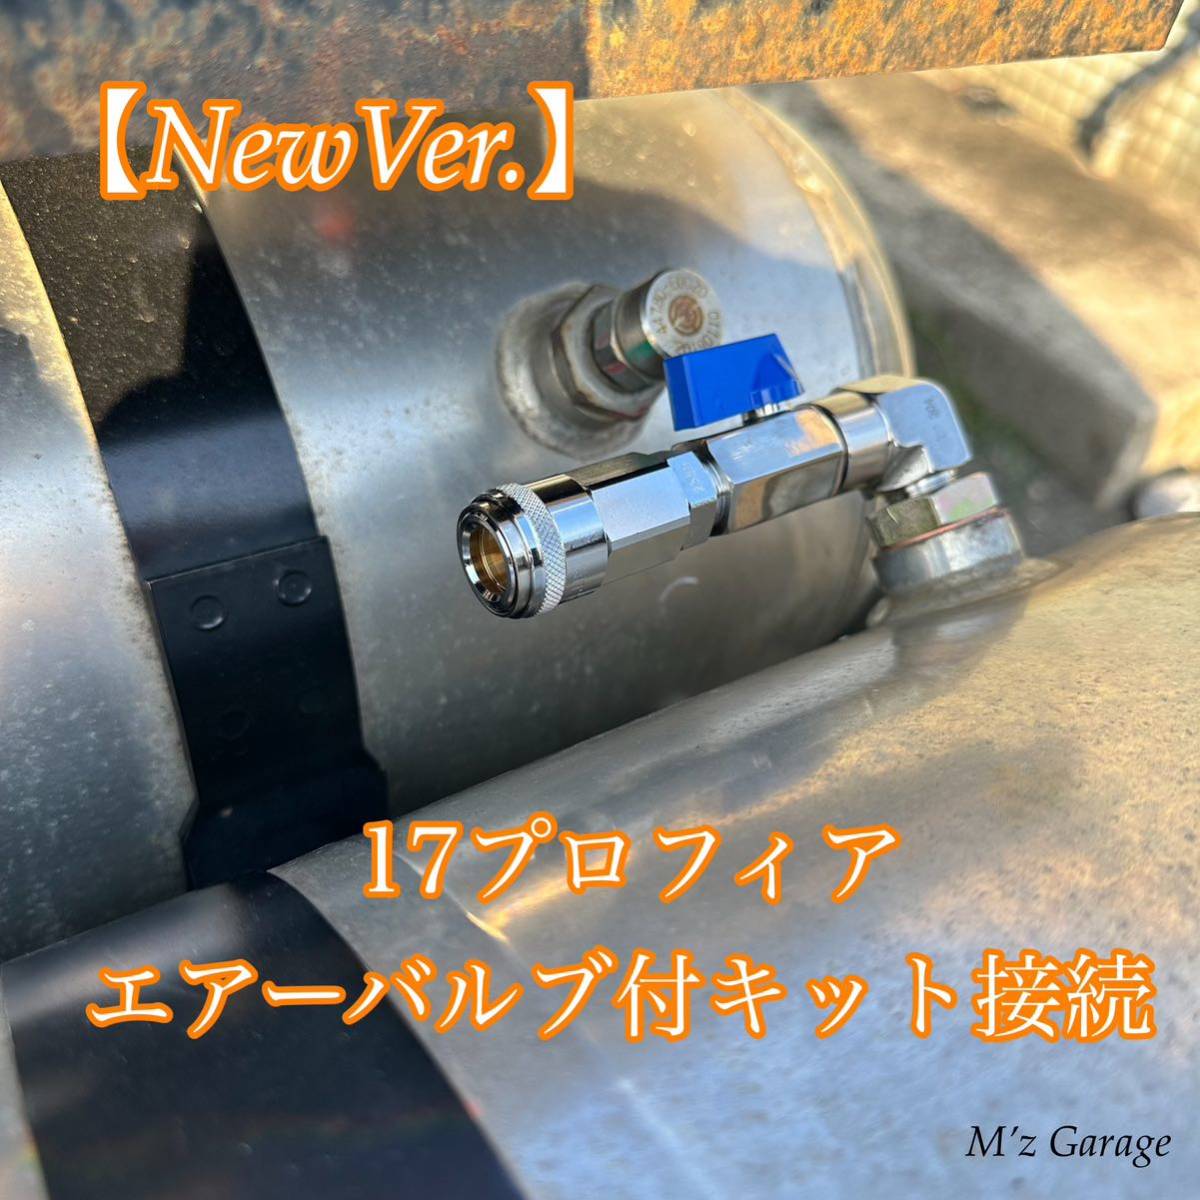 【NewVer】１７プロフィア エアー取り出しキットSUS304ステンレス製超高圧エルボー・エアーバルブ付き_画像4